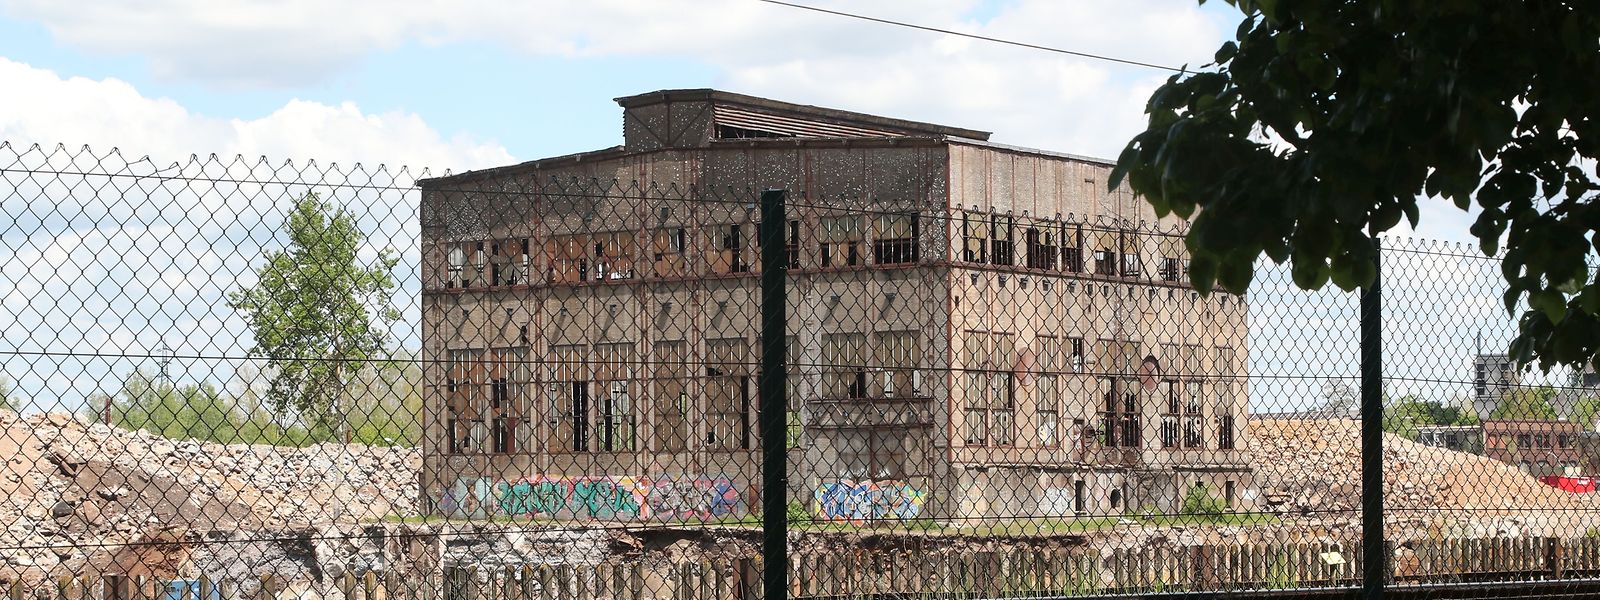 Auf dem Areal bleiben mehrere der früheren Industriegebäude erhalten.